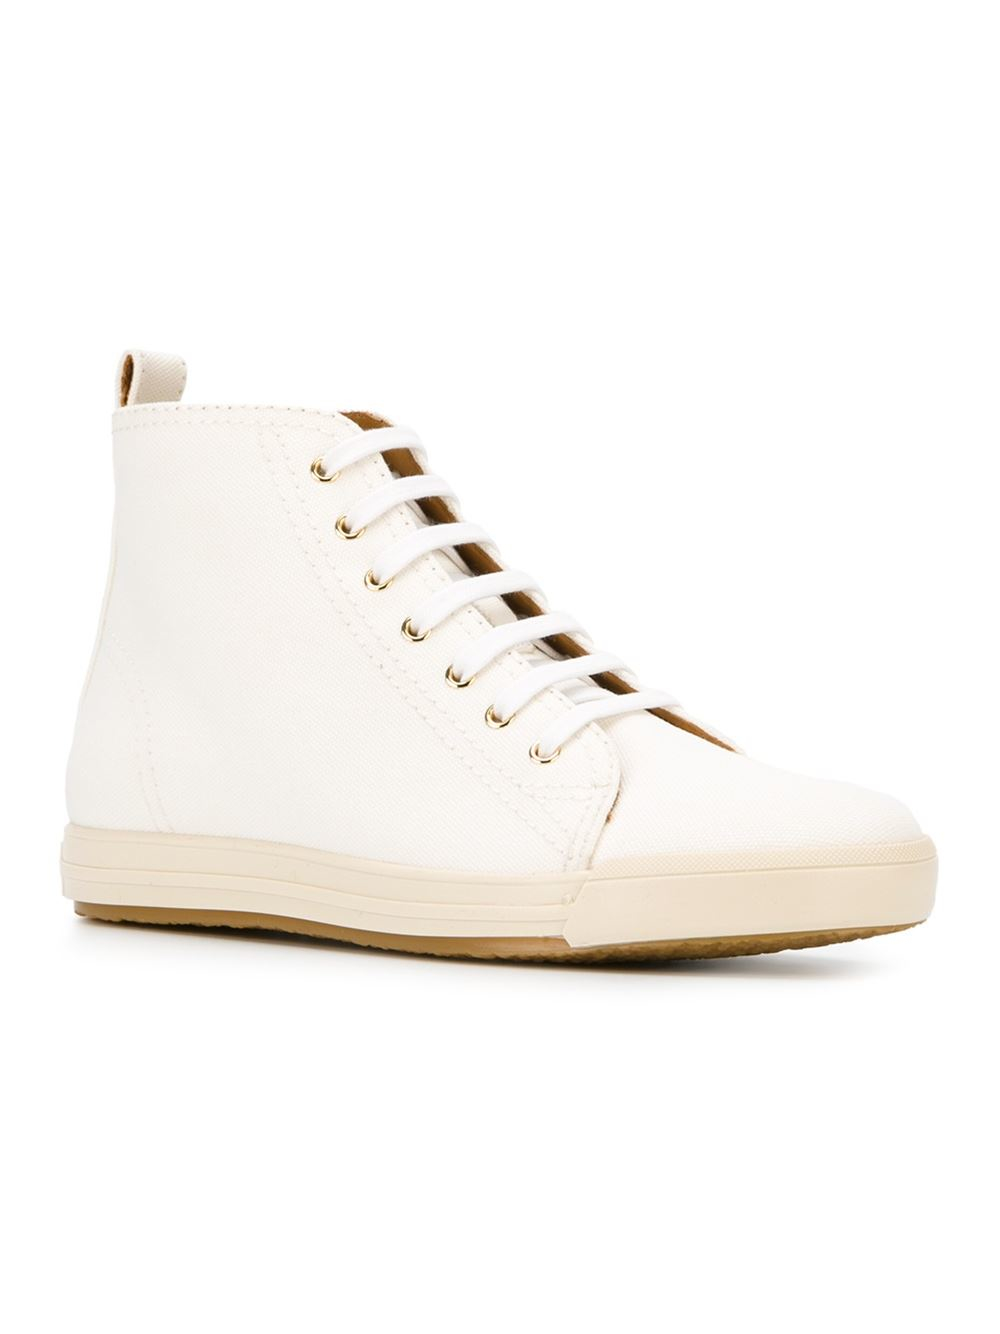 Lyst - Ralph Lauren 'whitney' Hi-top Sneakers in White